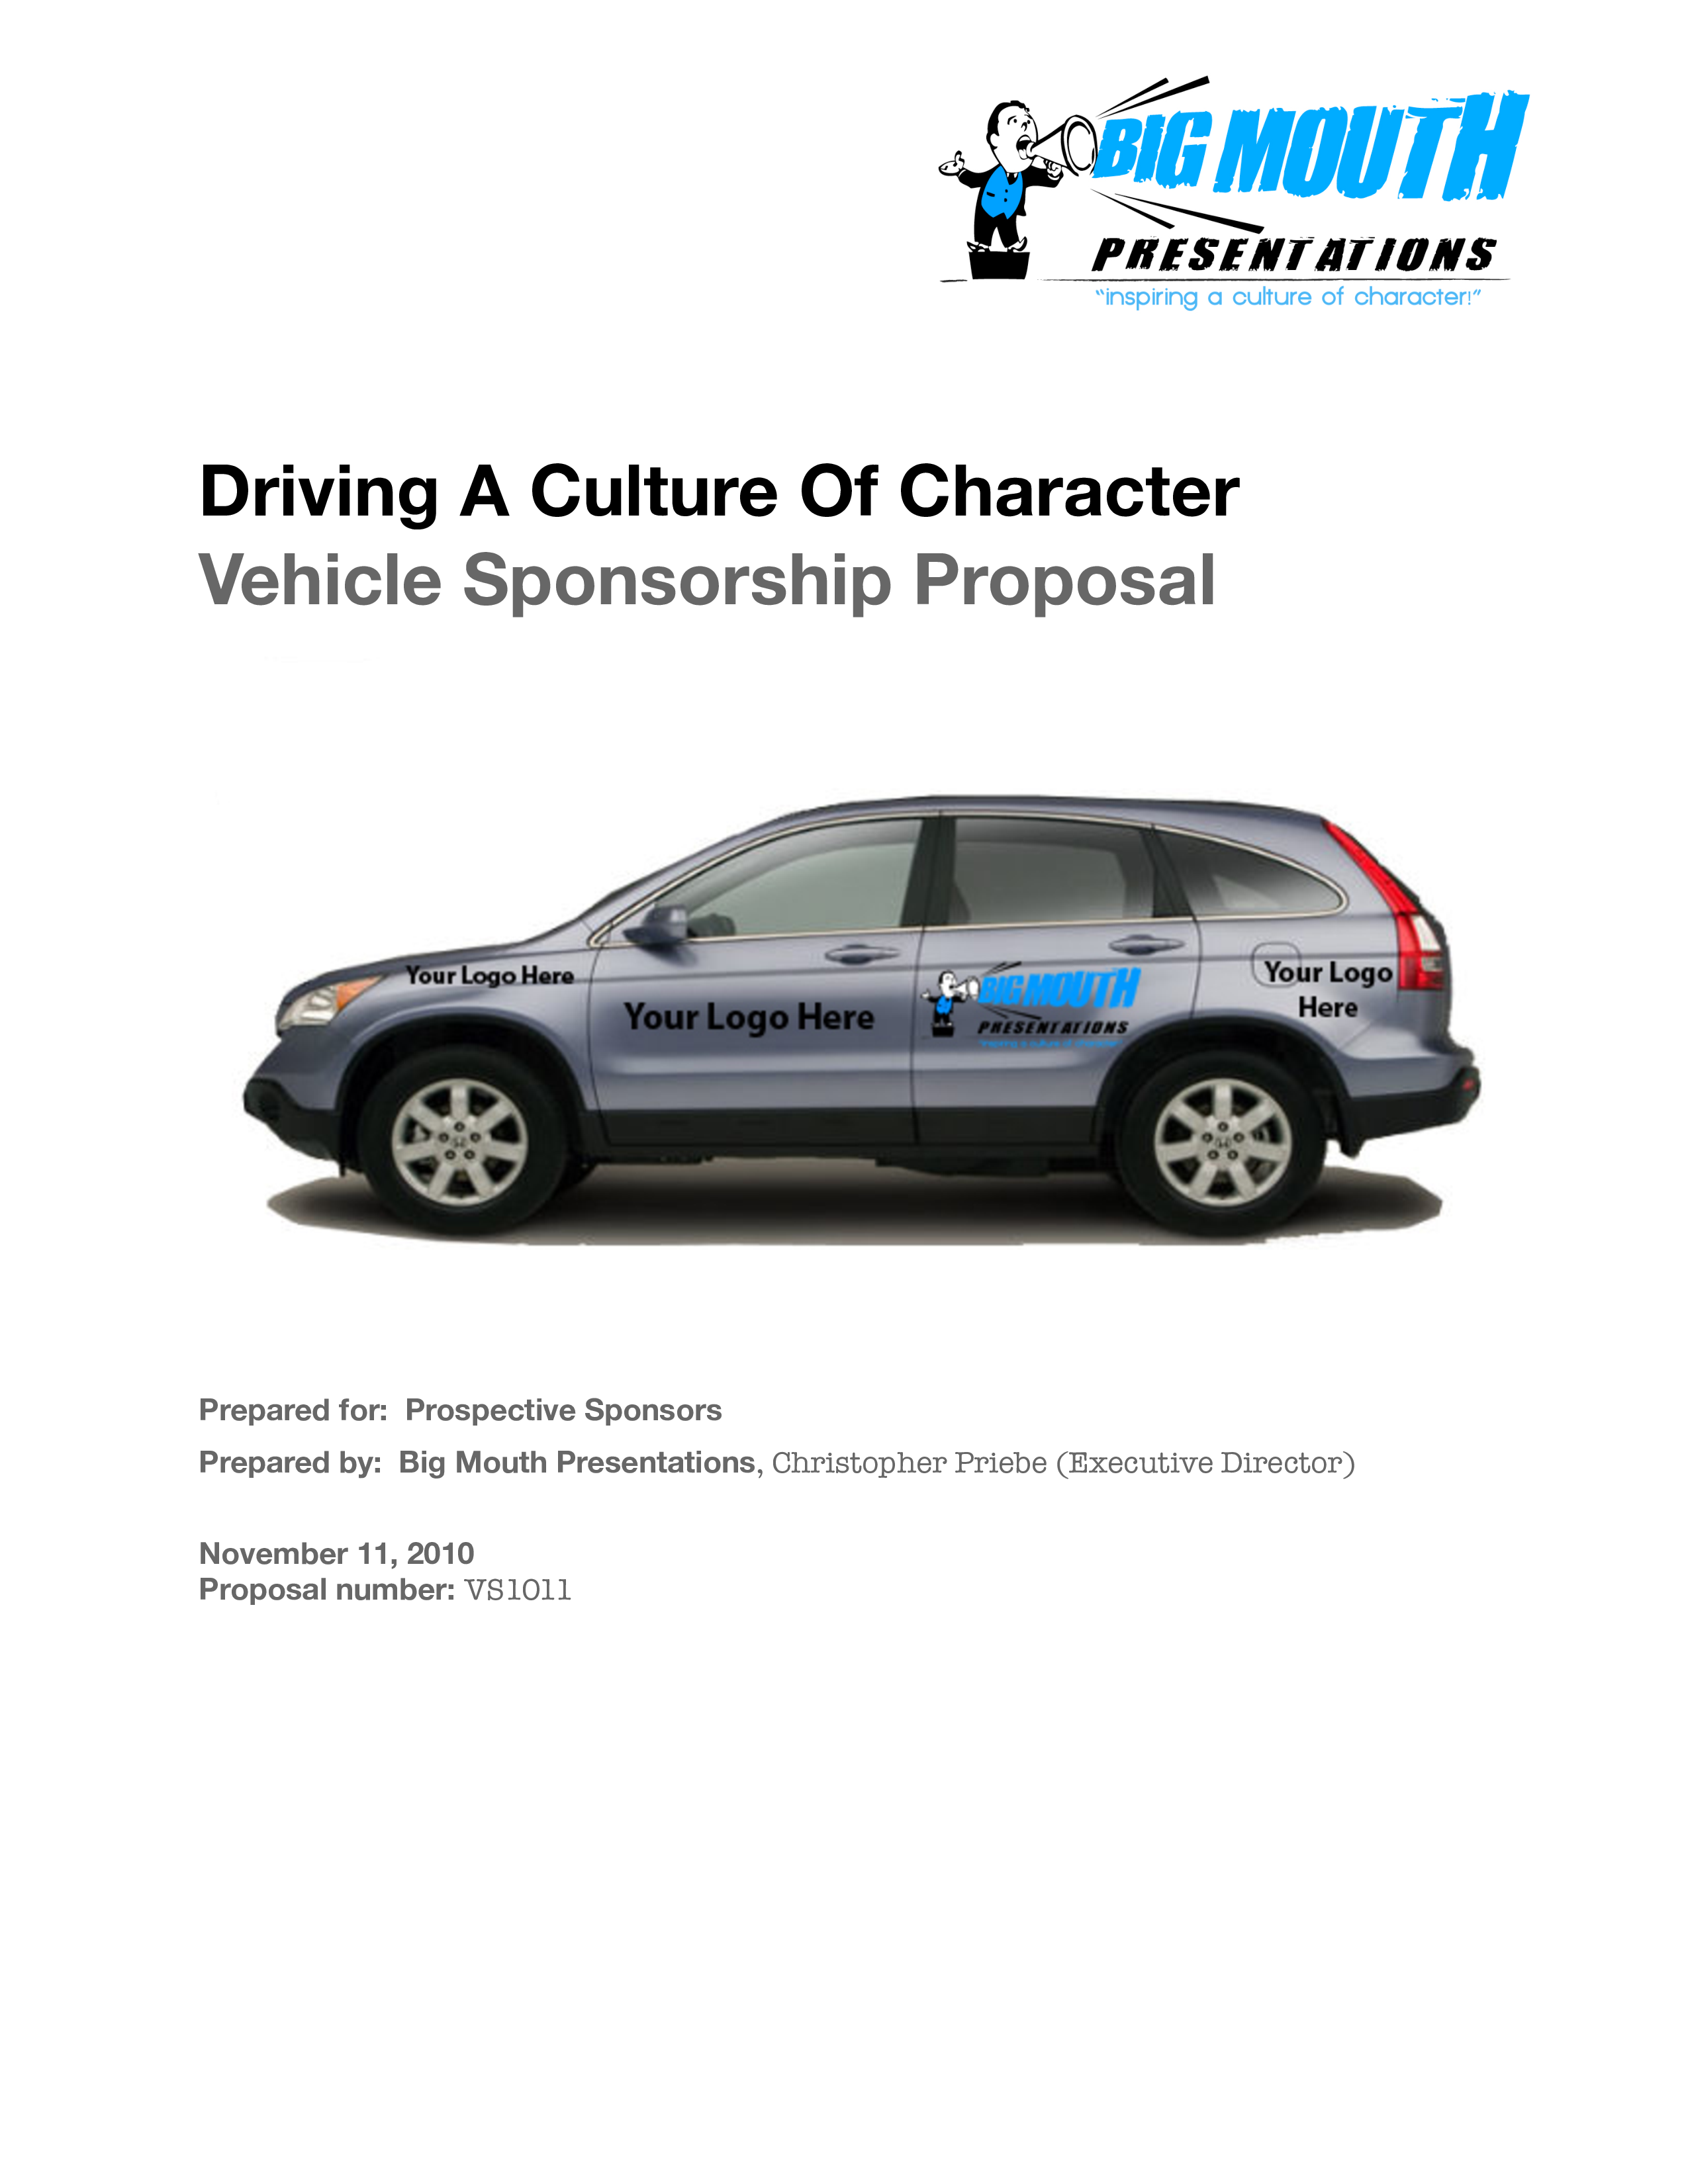 Vehicle Sponsorship Proposal main image